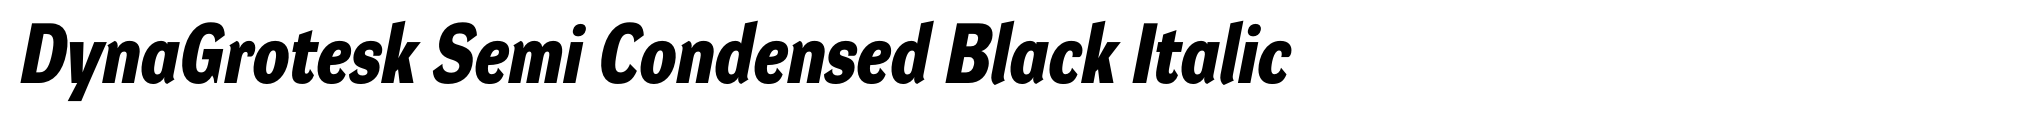 DynaGrotesk Semi Condensed Black Italic image